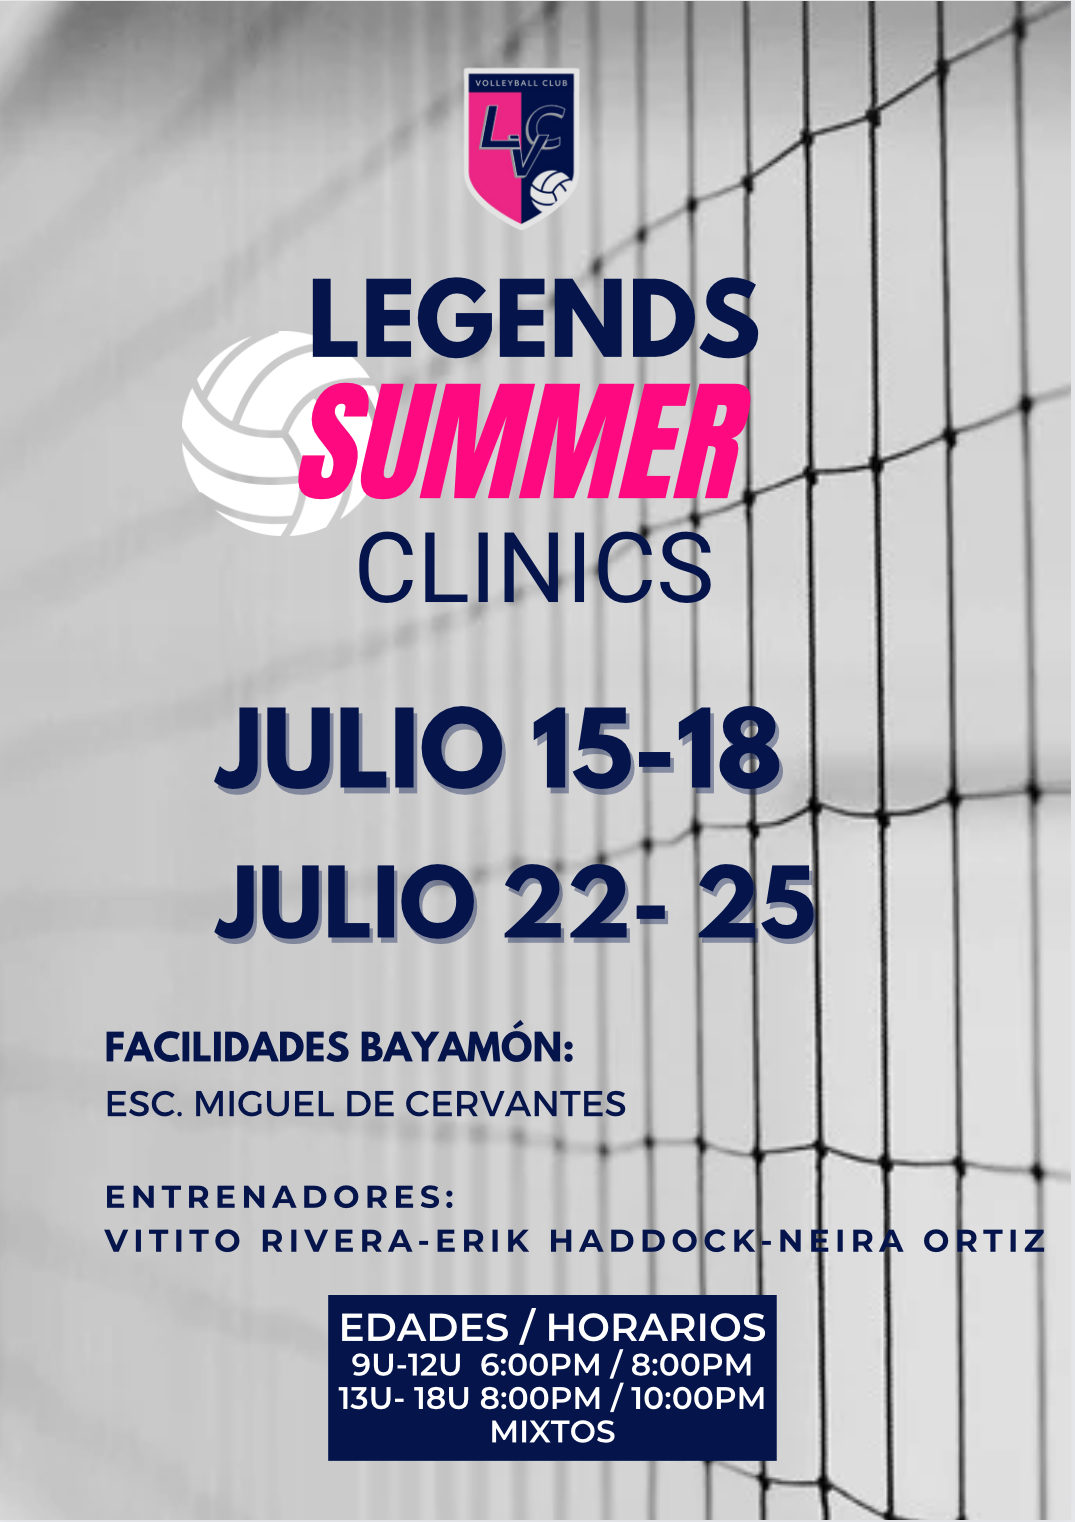 Legends Summer Clinics